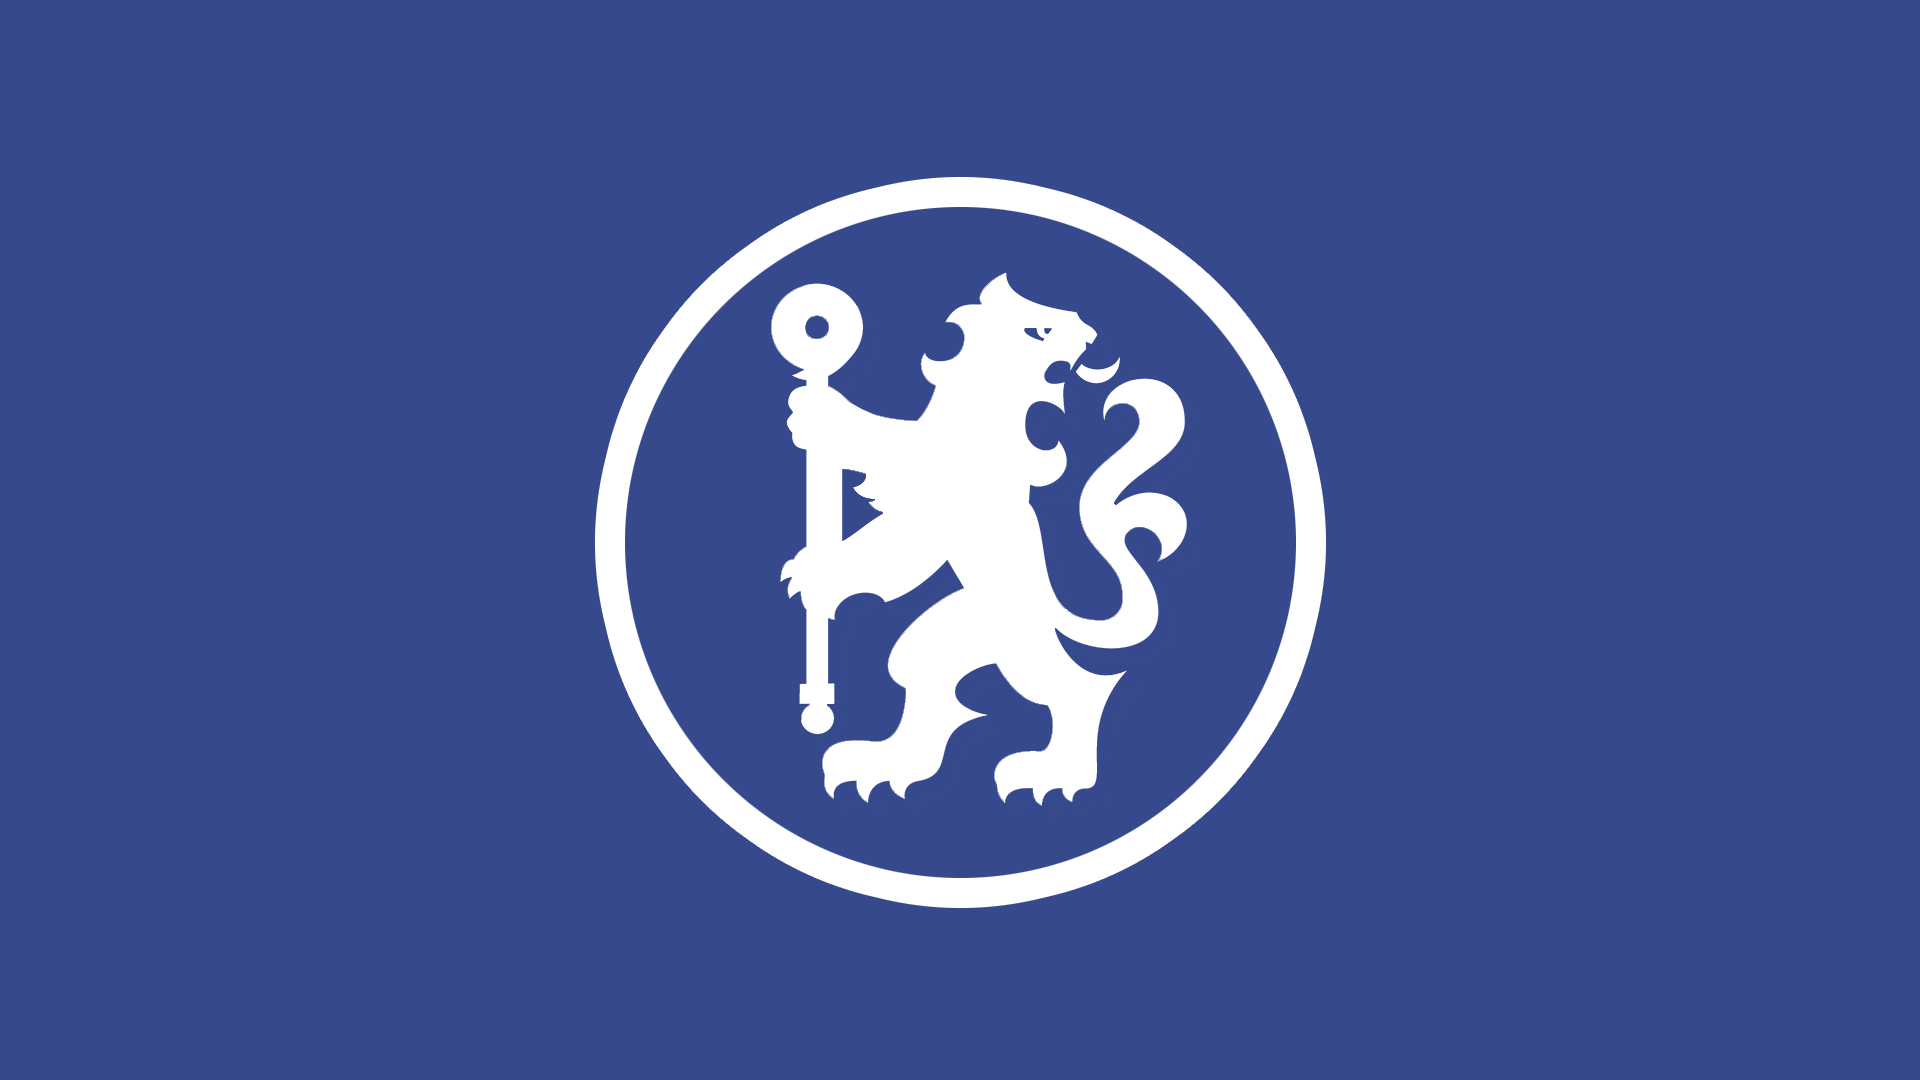 Simply: Chelsea Chelsea FC EPL English Premier League